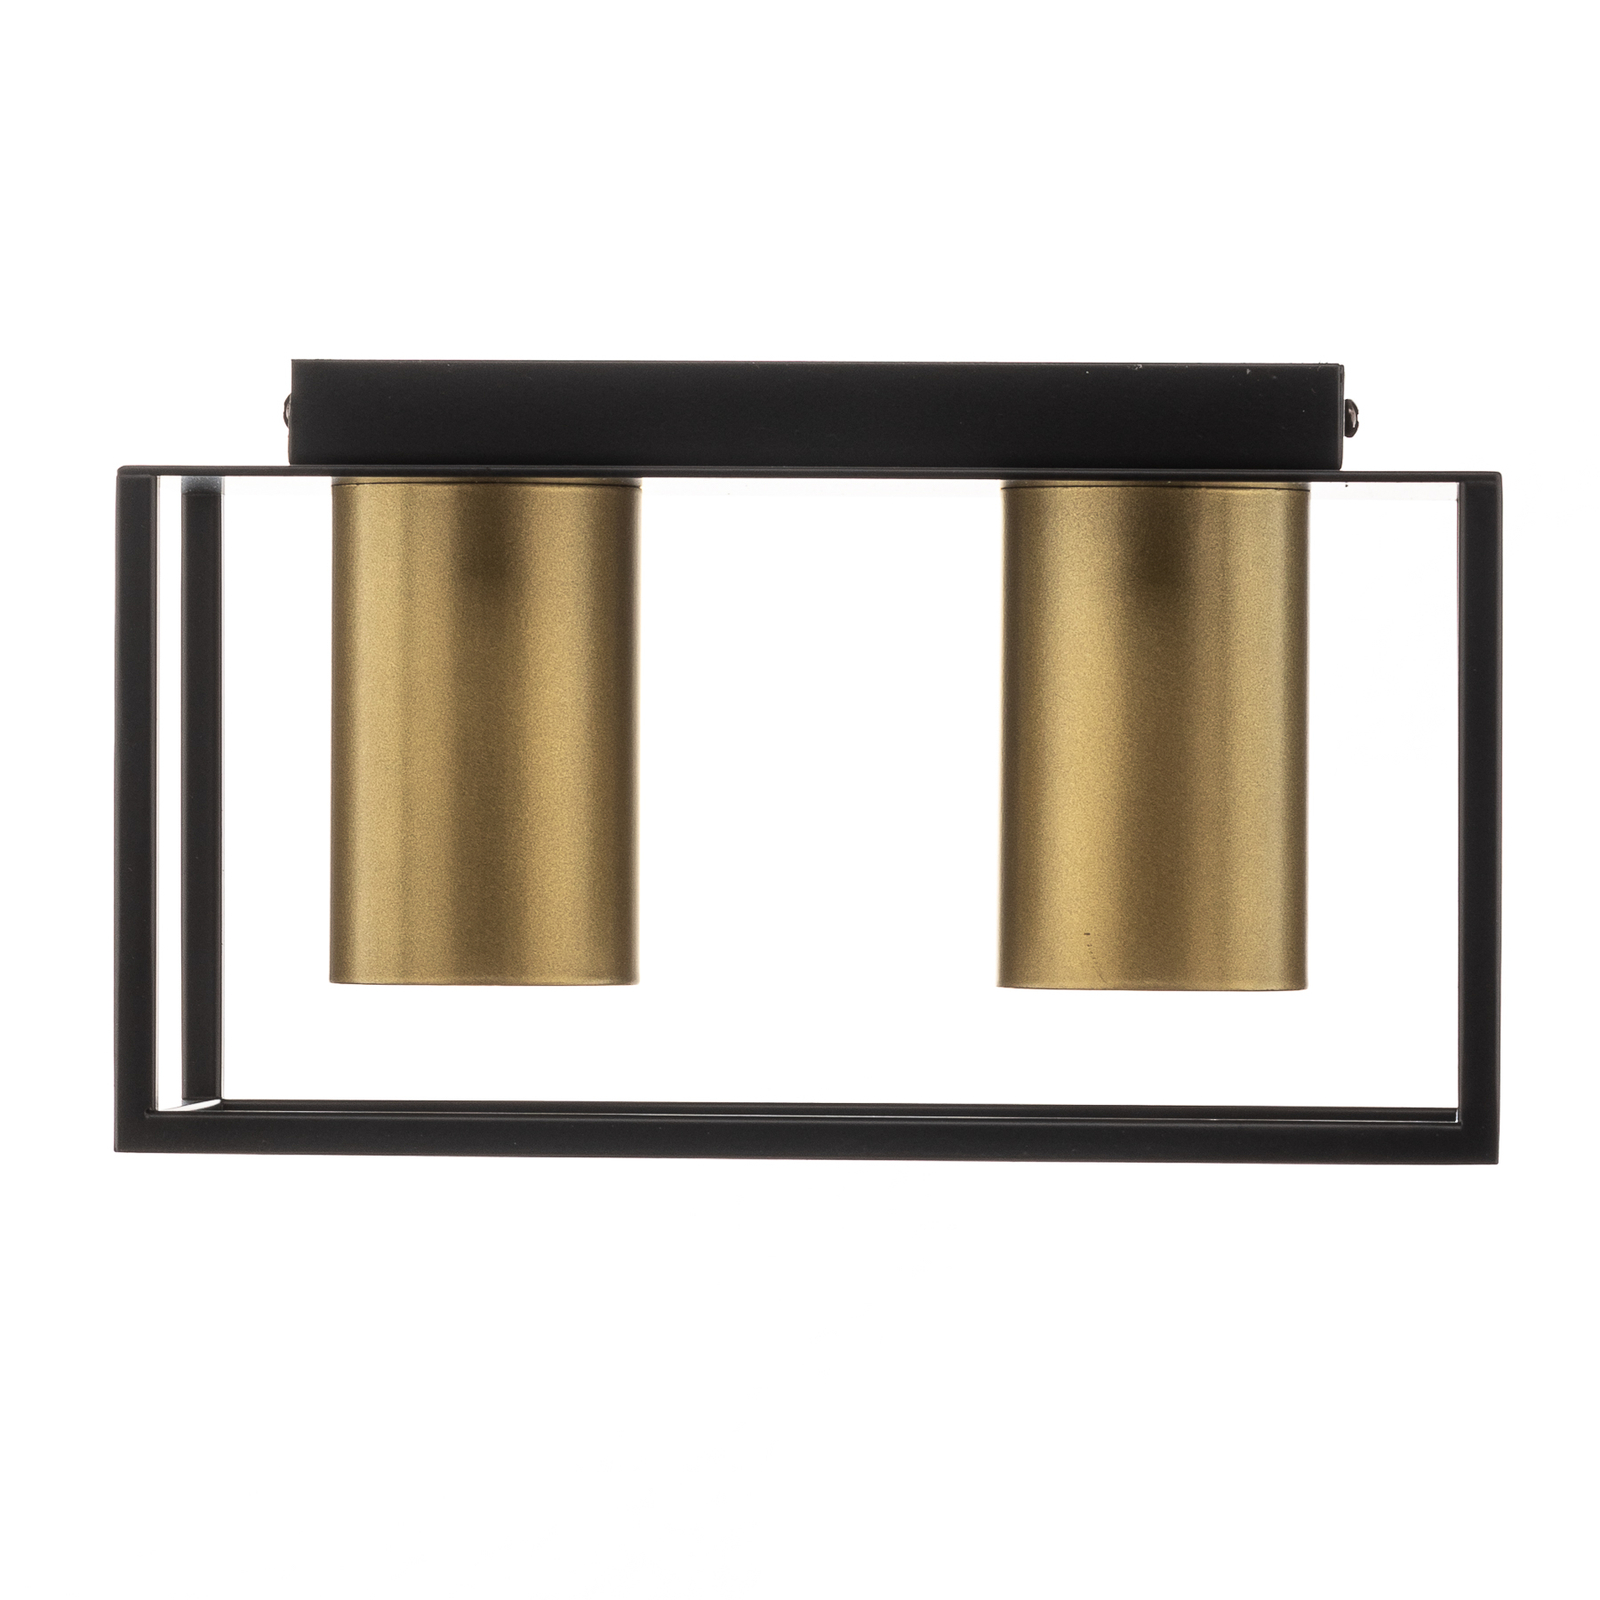 Deckenspot Tiper mit Rahmen, 2fl, schwarz-gold